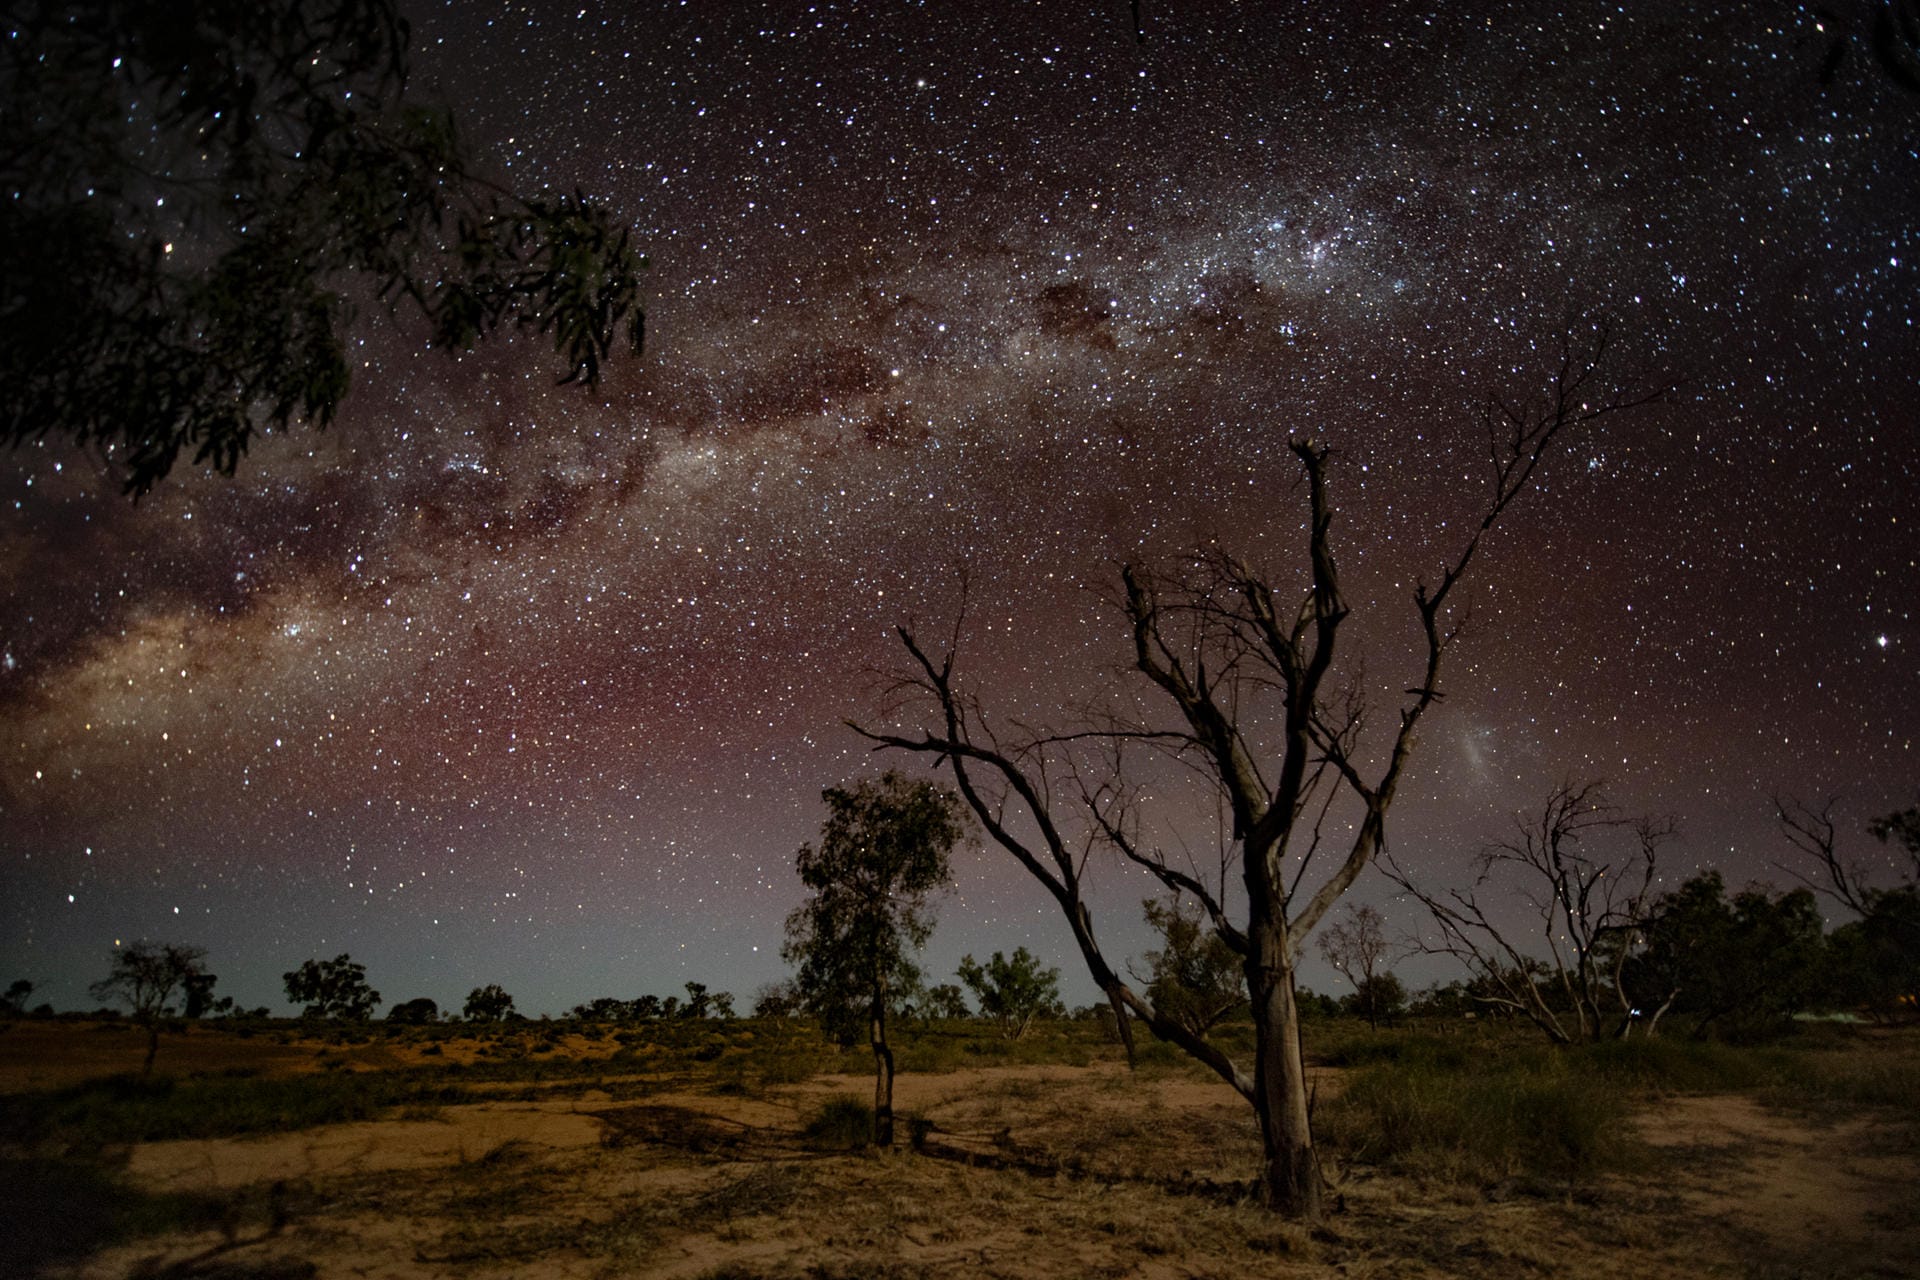 Milchstraße im Outback von Queensland: Die ersten künstlichen Lichter sind hunderte Kilometer entfernt. So kann der Sternenhimmel in einer extremen Klarheit bestaunt werden. Die Milchstraße ist deutlich sichtbar.